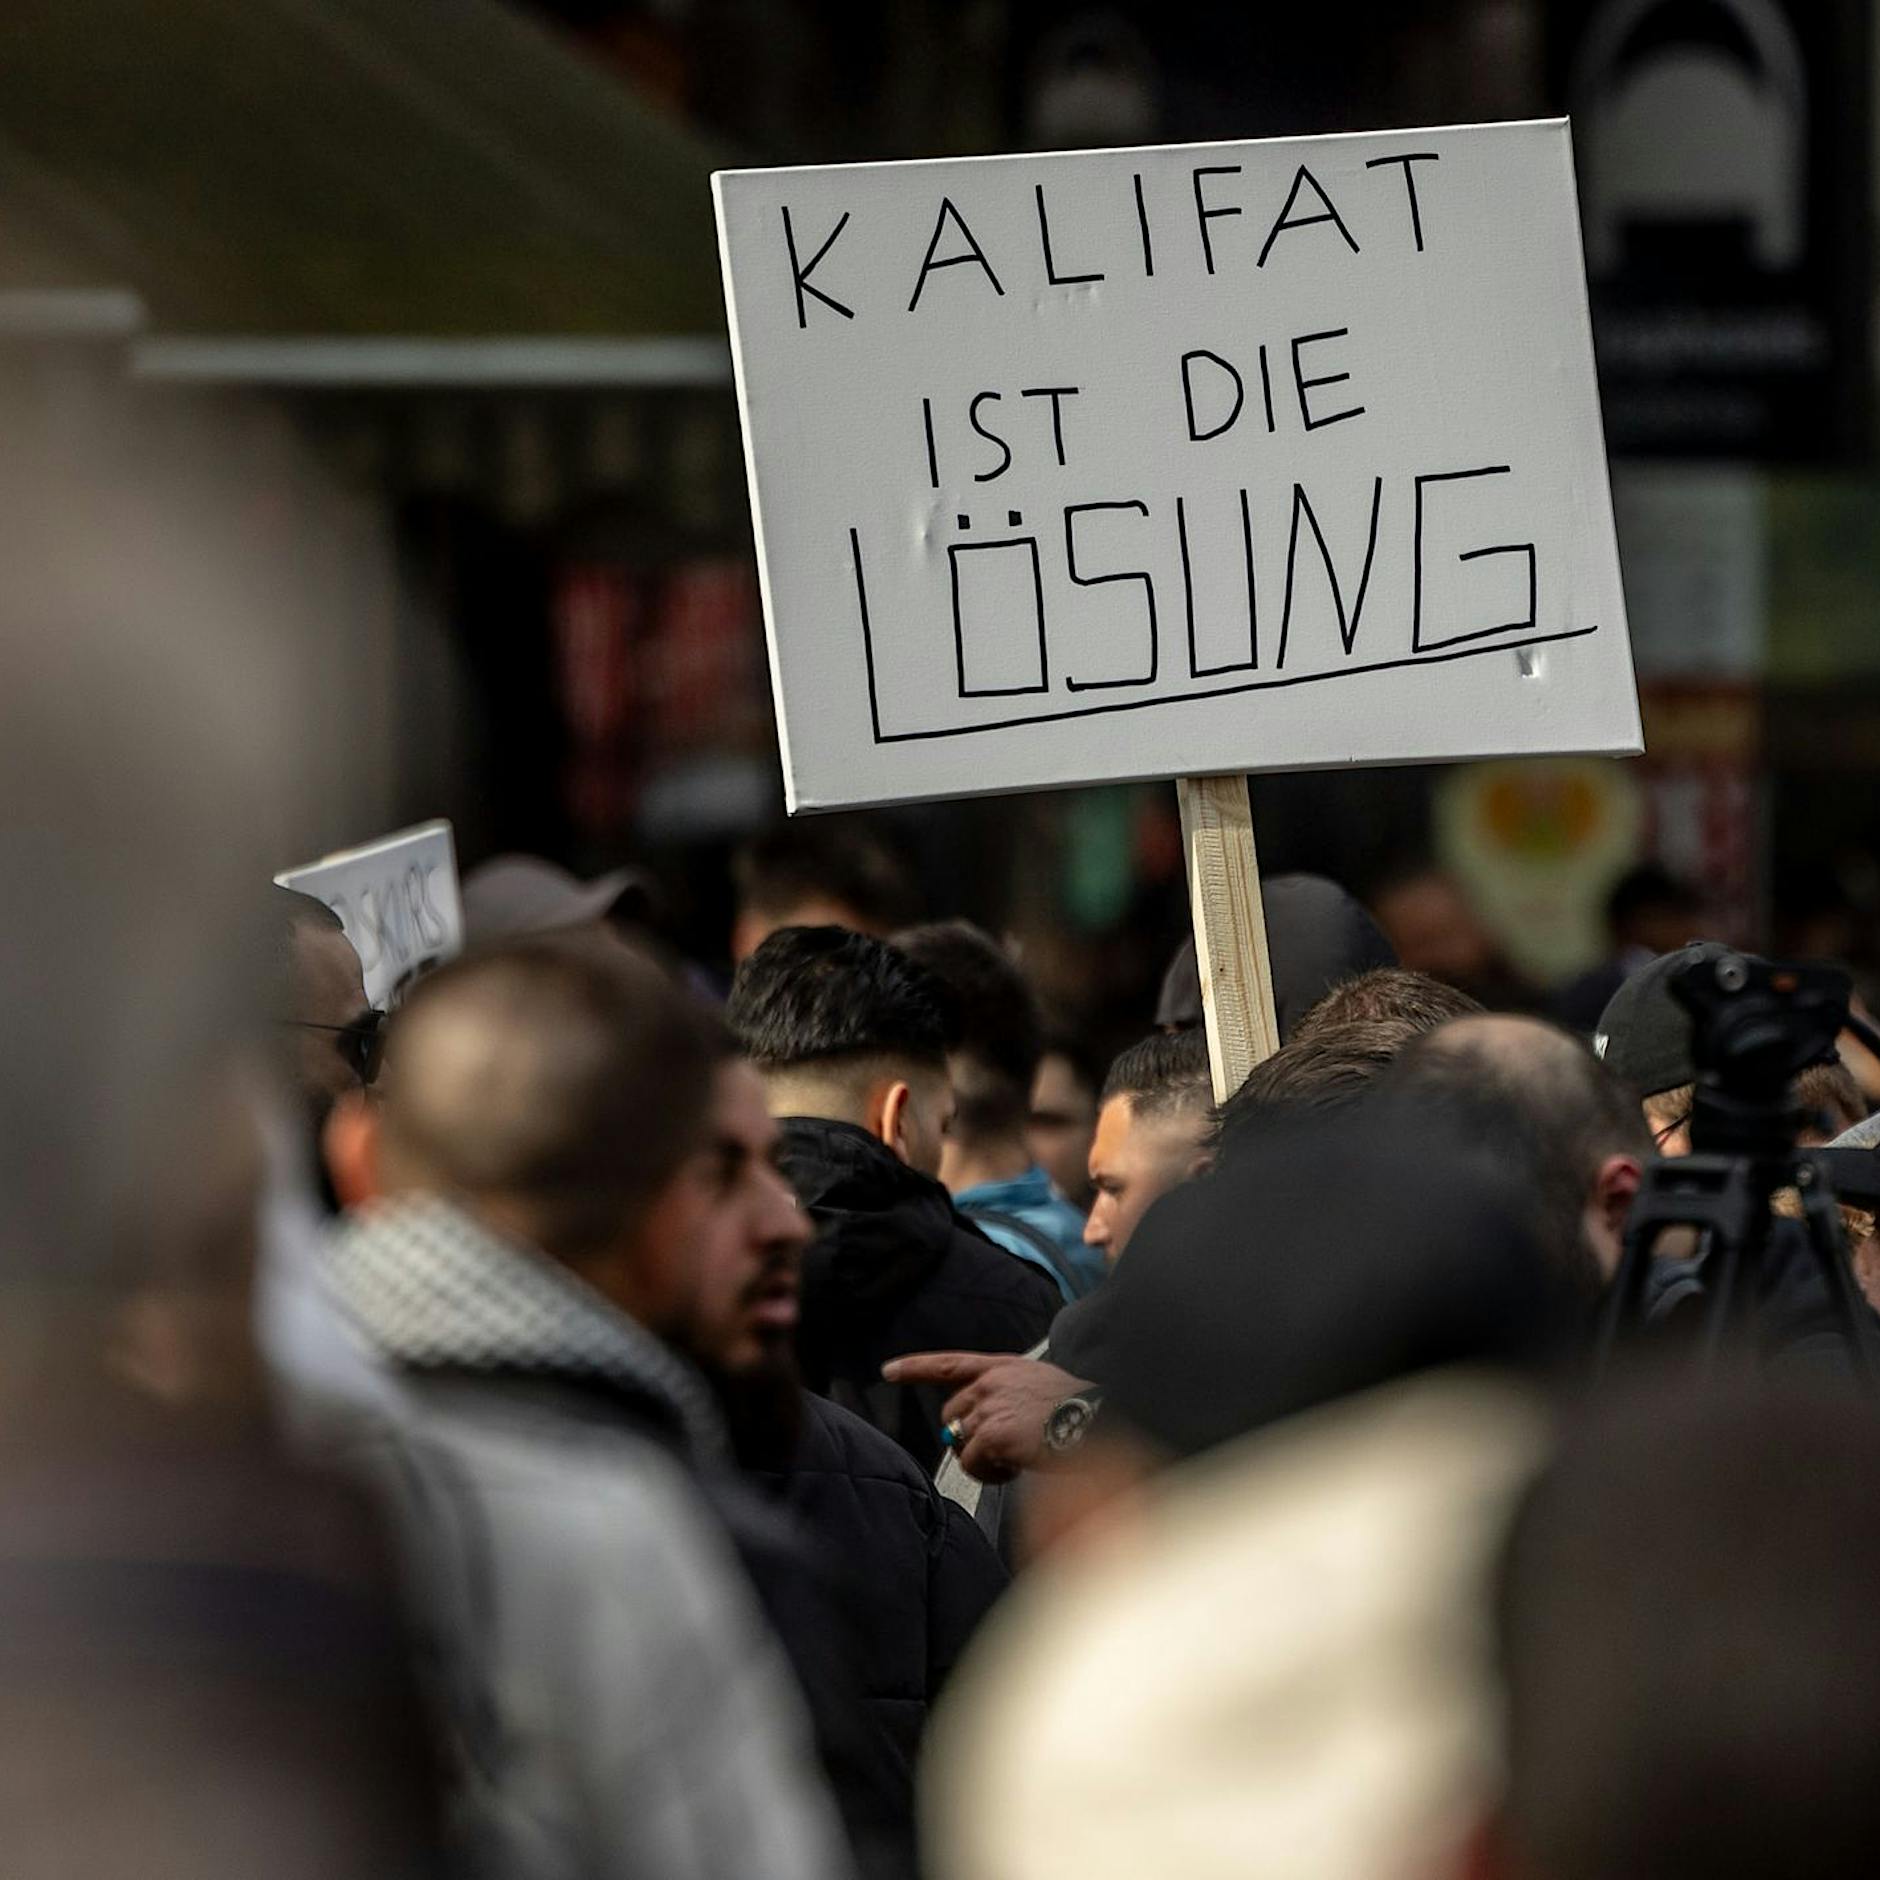 CDU-Politiker Christoph de Vries will Ruf nach Kalifat strafbar machen